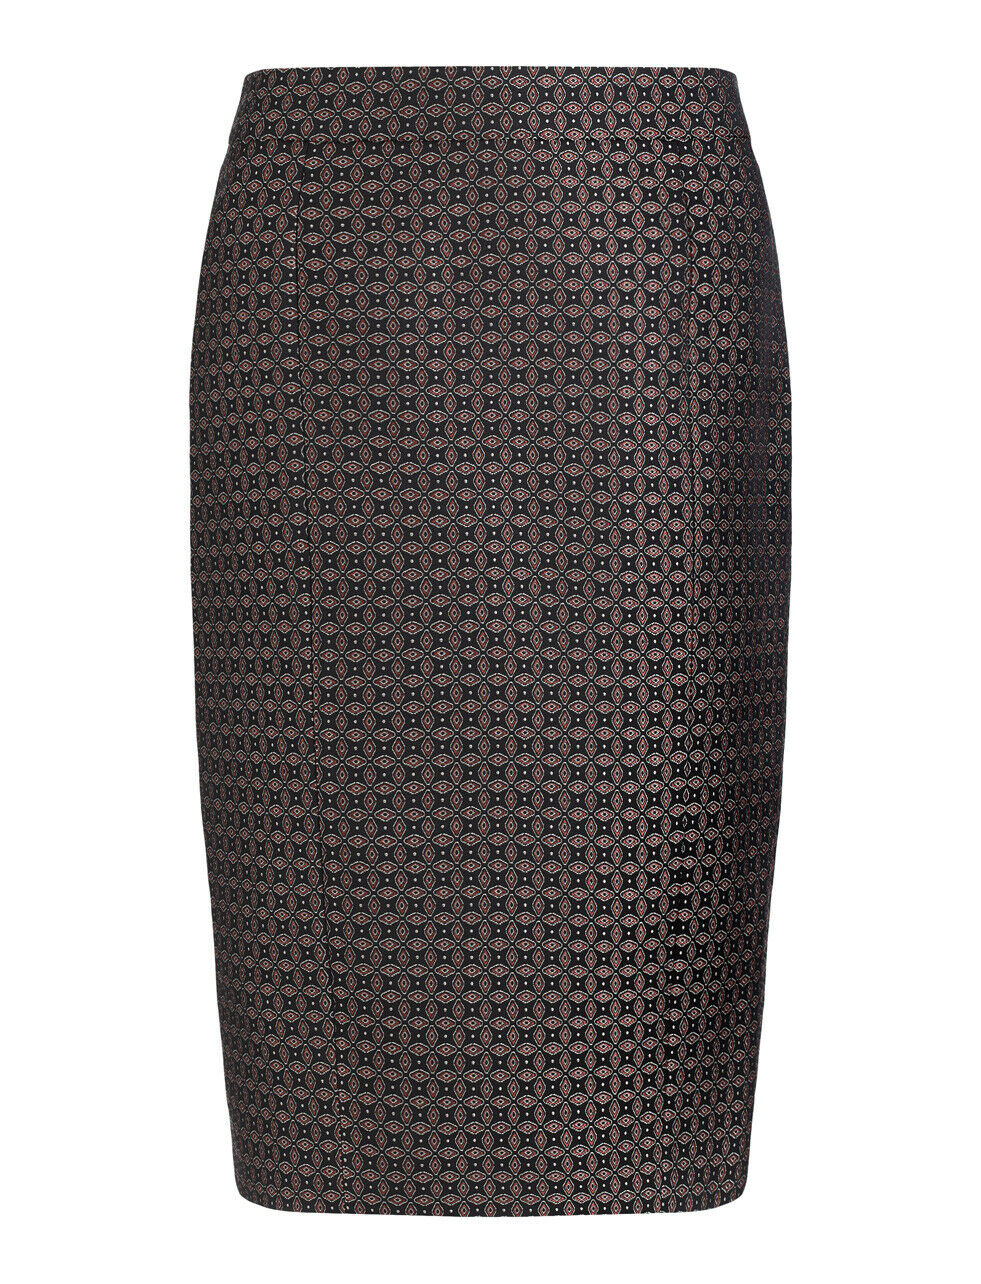 JOSEPH Cravat Jacquard Black Burgundy Pencil Skirt UK 10 US 6 EU 38 BNWT Timeless Fashions